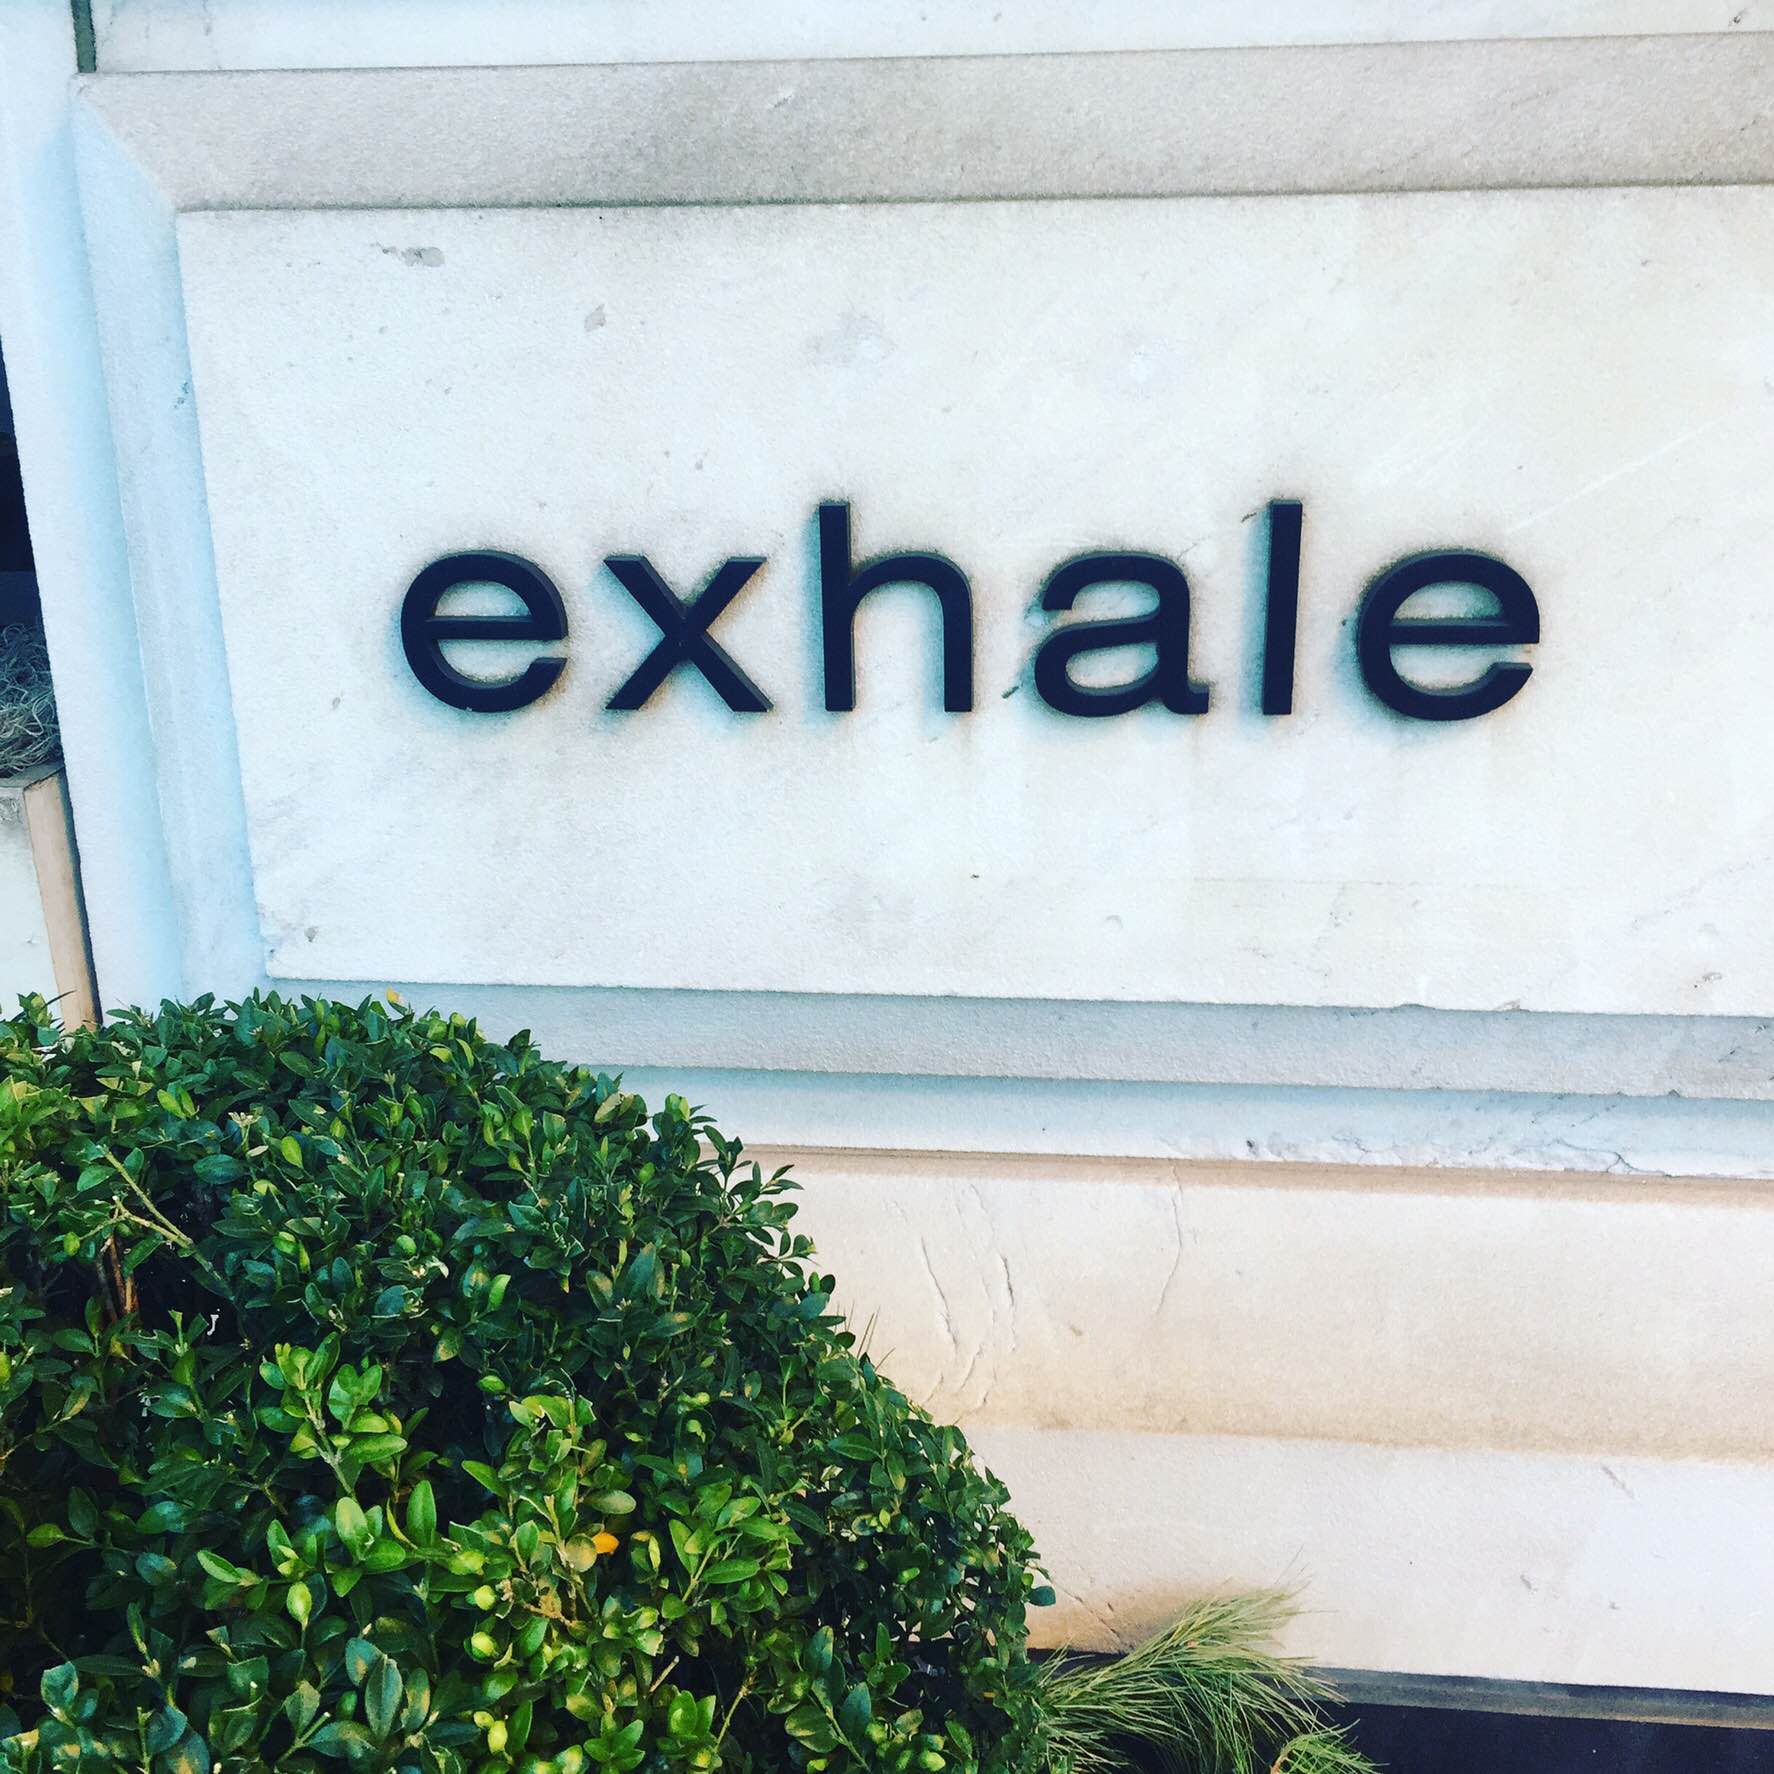 exhale